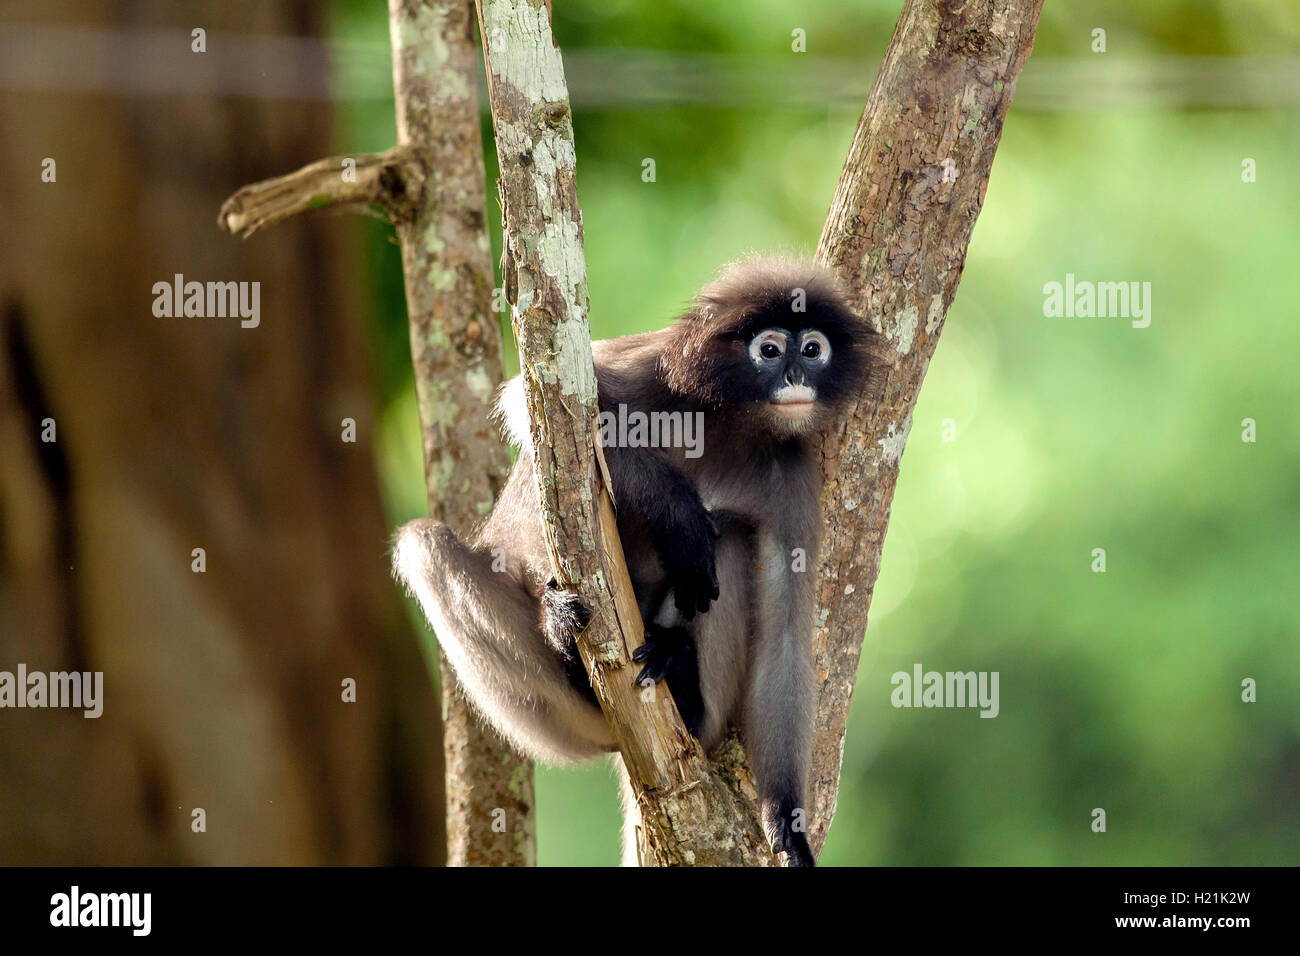 Thailand, dusky leaf monkey Stock Photo